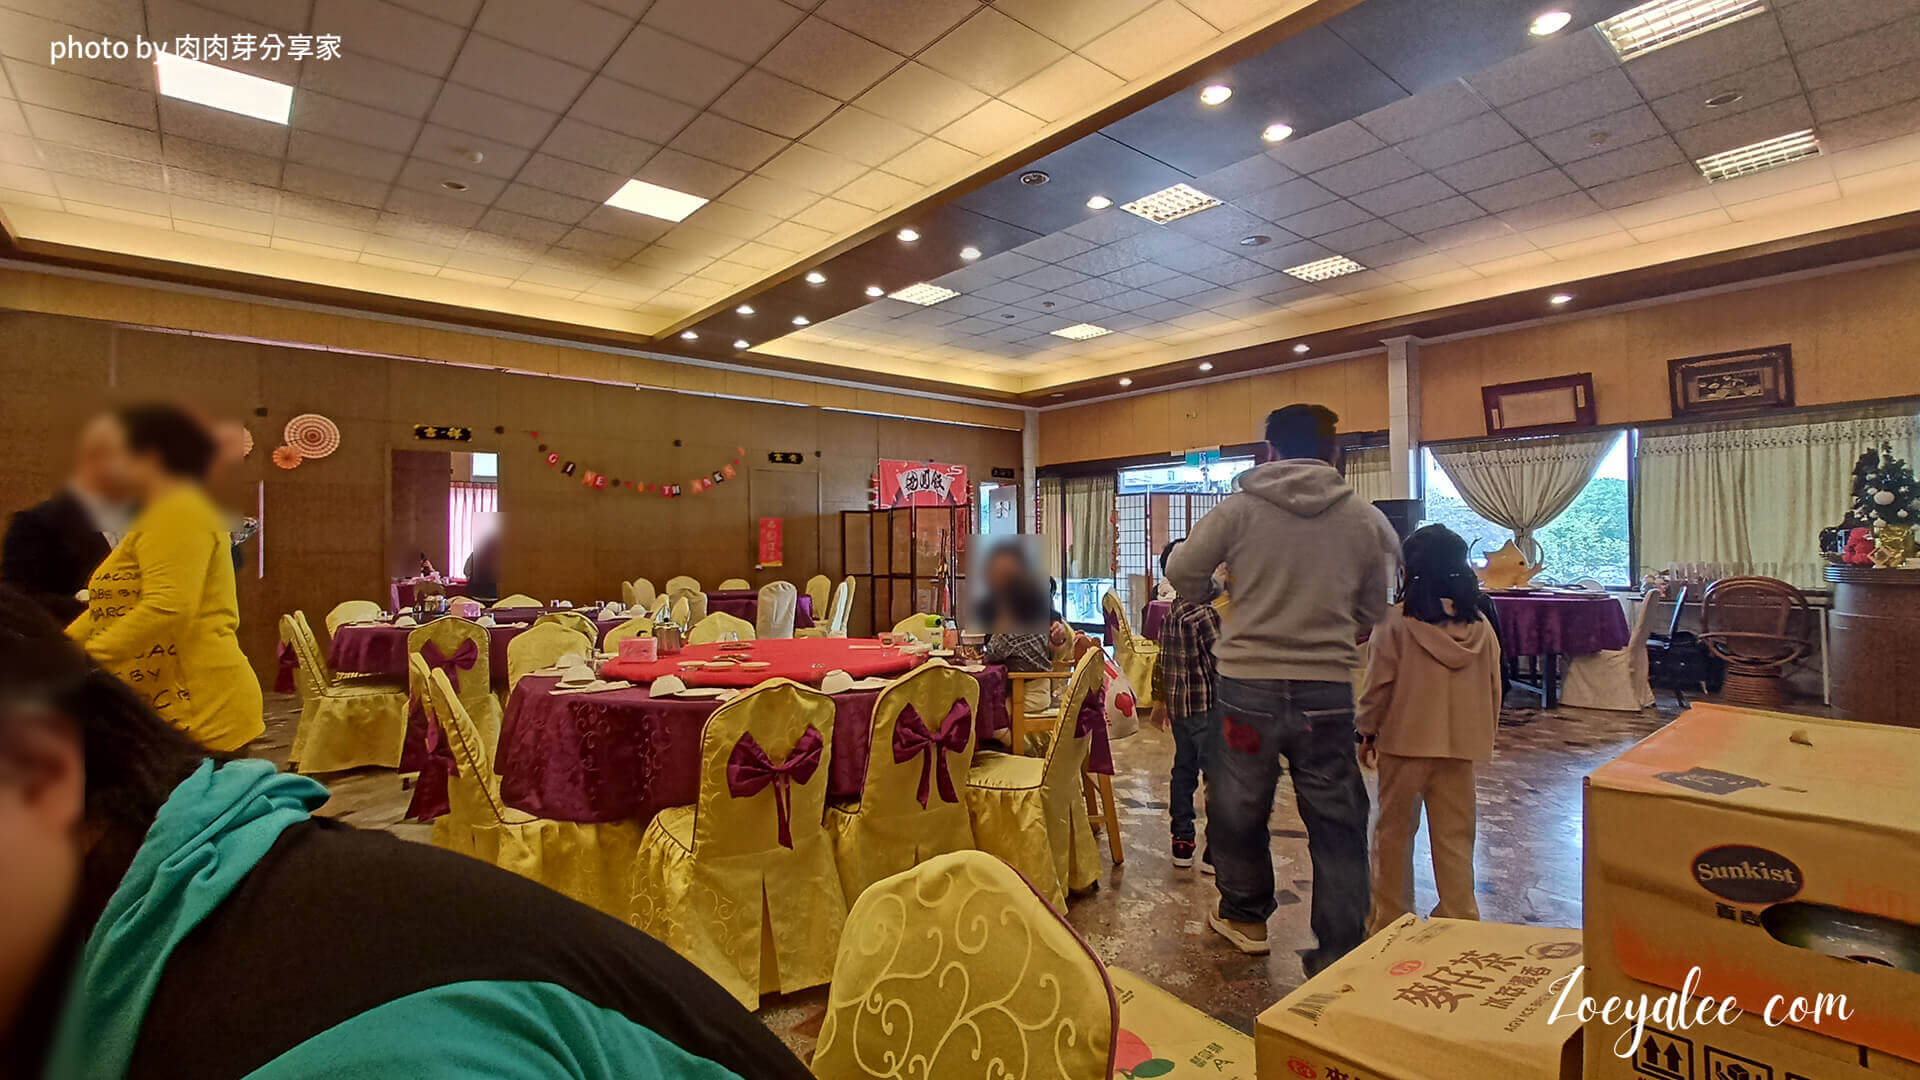 桃園八德,項目包含喜宴,聚餐,外燴的餐廳-上海怹餐廳婚宴座位是圓桌，並且搭配高級紫色綢緞桌巾與黃金色的花紋椅套